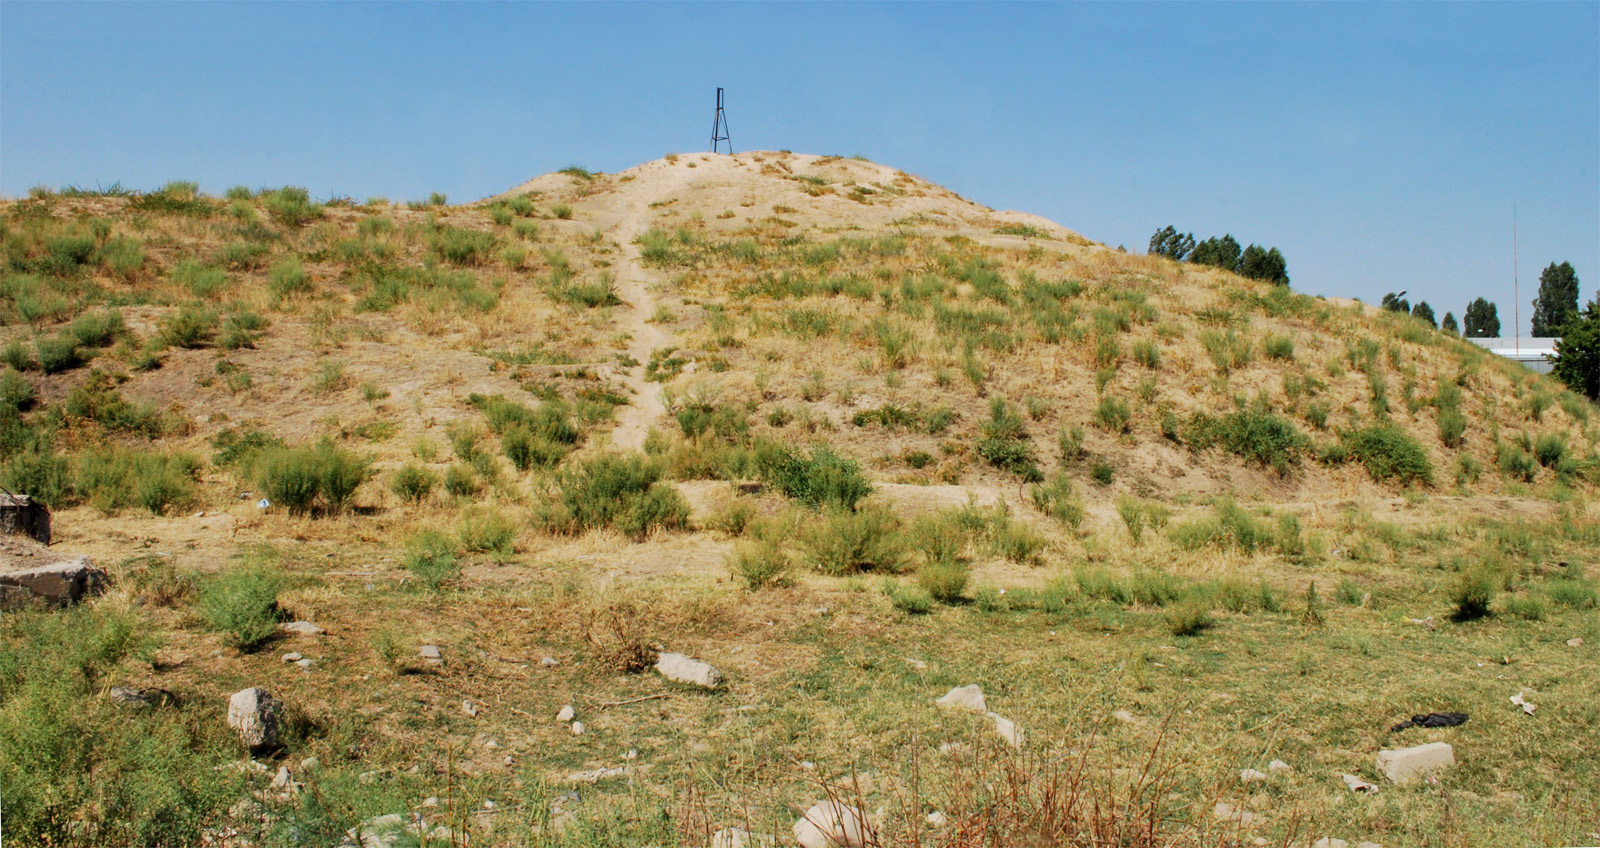 Холм Кулоктепа (Quloqtepa), image of landscape/habitat.